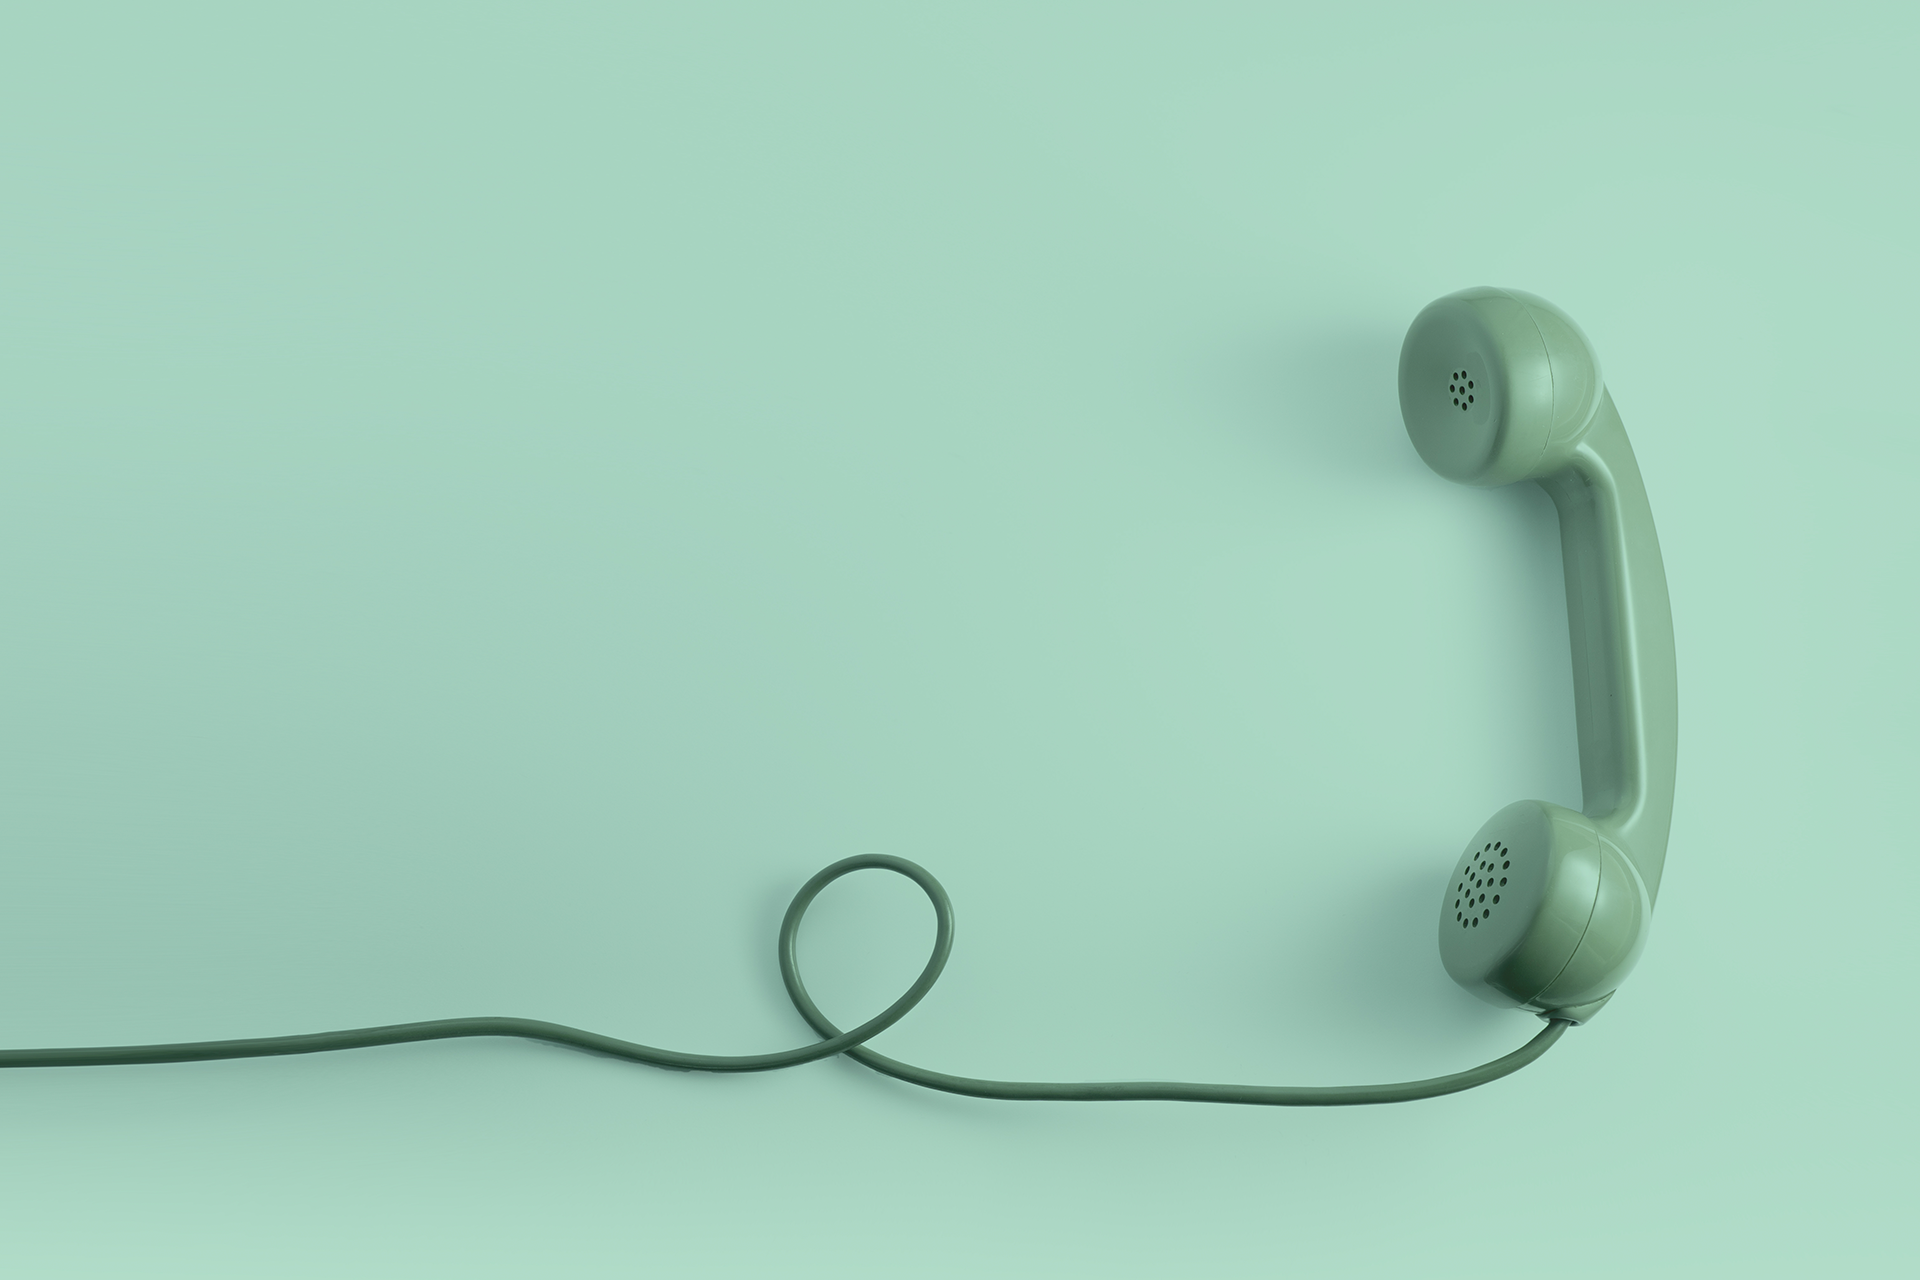 Illustration eines grünen Schnurtelefons als Verbildlichung von Word-of-Mouth-Marketing (WoM) und Mundpropaganda